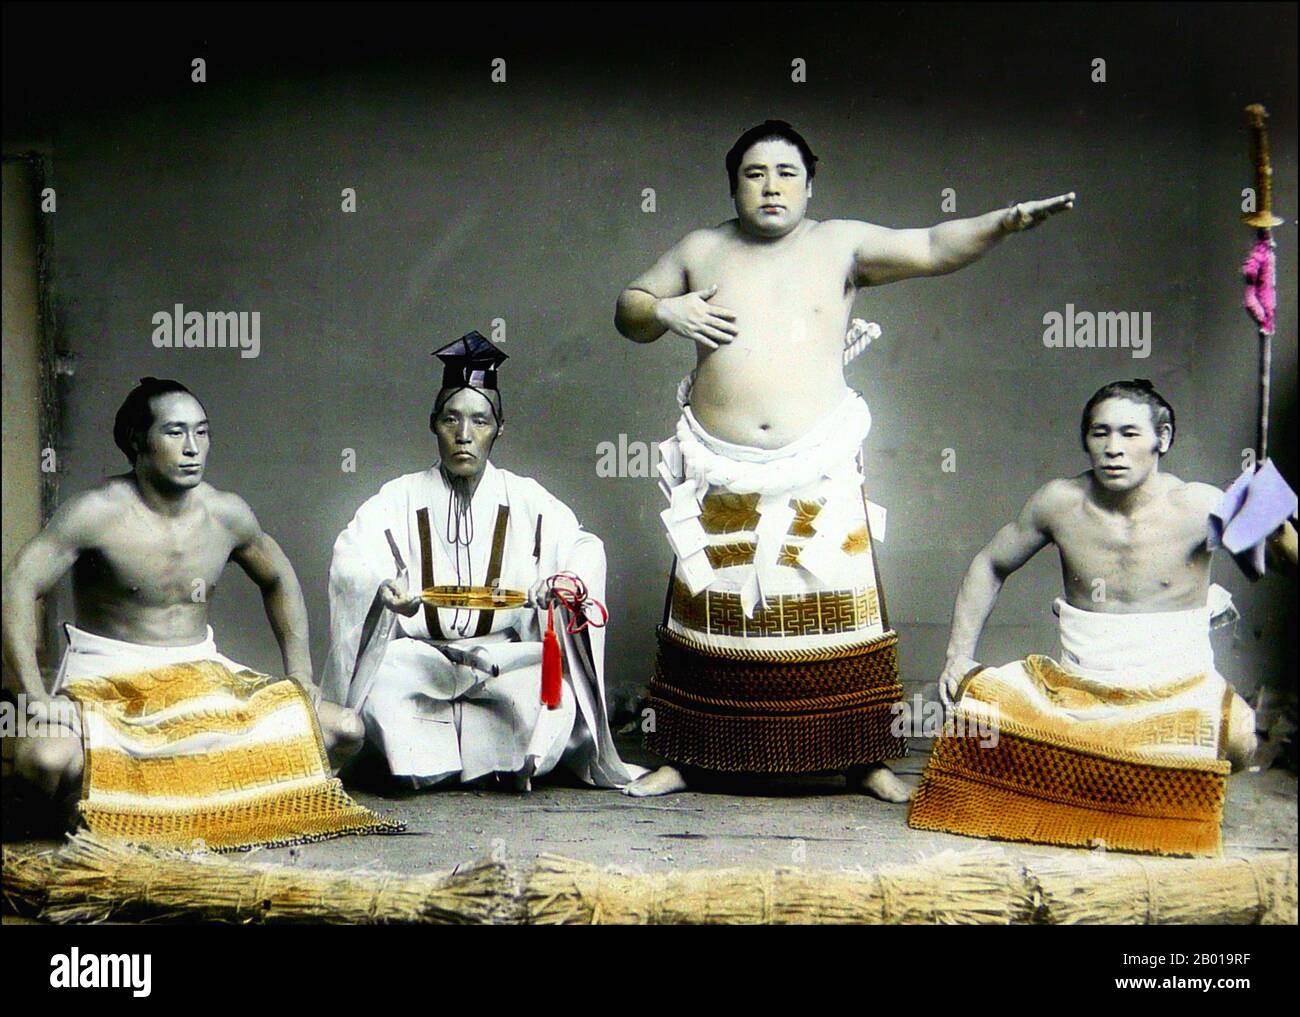 Japon : trois lutteurs sumo (rikishi) et un arbitre (gyoji). Photo de T. Enami (1859-1929), c. 1892-1895. T. Enami (Enami Nobukuni) était le nom commercial d'un célèbre photographe de l'époque Meiji. Le T. de son nom commercial est censé avoir représenté Toshi, bien qu'il ne l'ait jamais écrit sur aucun document personnel ou d'affaires. Né à Edo (aujourd'hui Tokyo) pendant l'ère Bakumatsu, Enami a d'abord été étudiant, puis assistant du célèbre photographe et collectionniste, Ogawa Kazumasa. Enami a déménagé à Yokohama, et a ouvert un studio sur Benten-dōri (rue Benten) en 1892. Banque D'Images